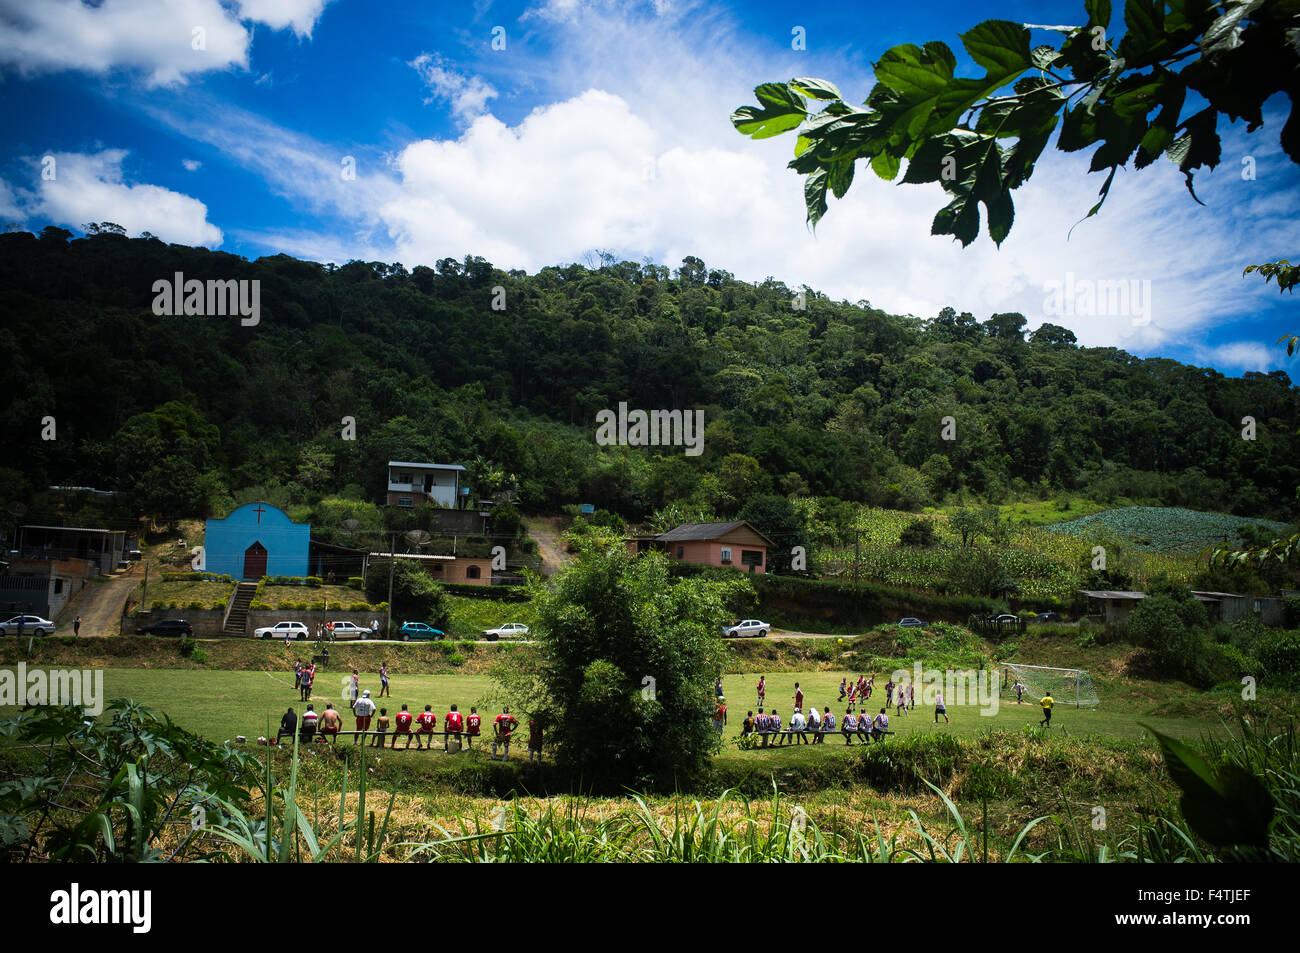 Soccer game in countryside Brazil. Nova Friburgo city rural area, Rio de Janeiro state. Stock Photo